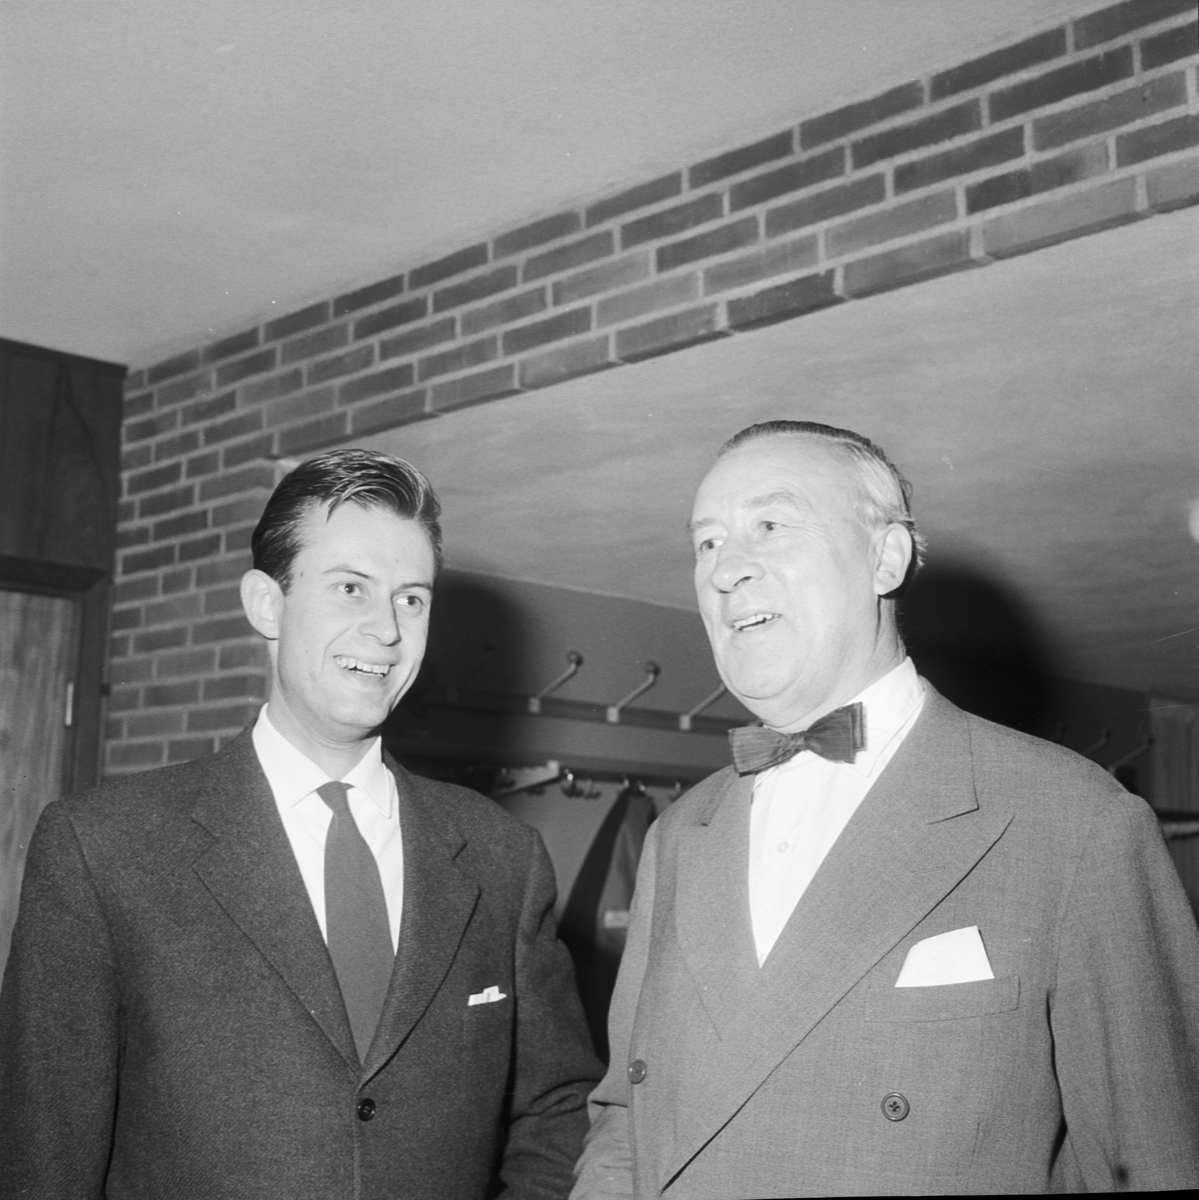 Liberala studenter, Nils Aastrup och Patrik Wykman vid debatt på Smålands nation, Uppsala 1959